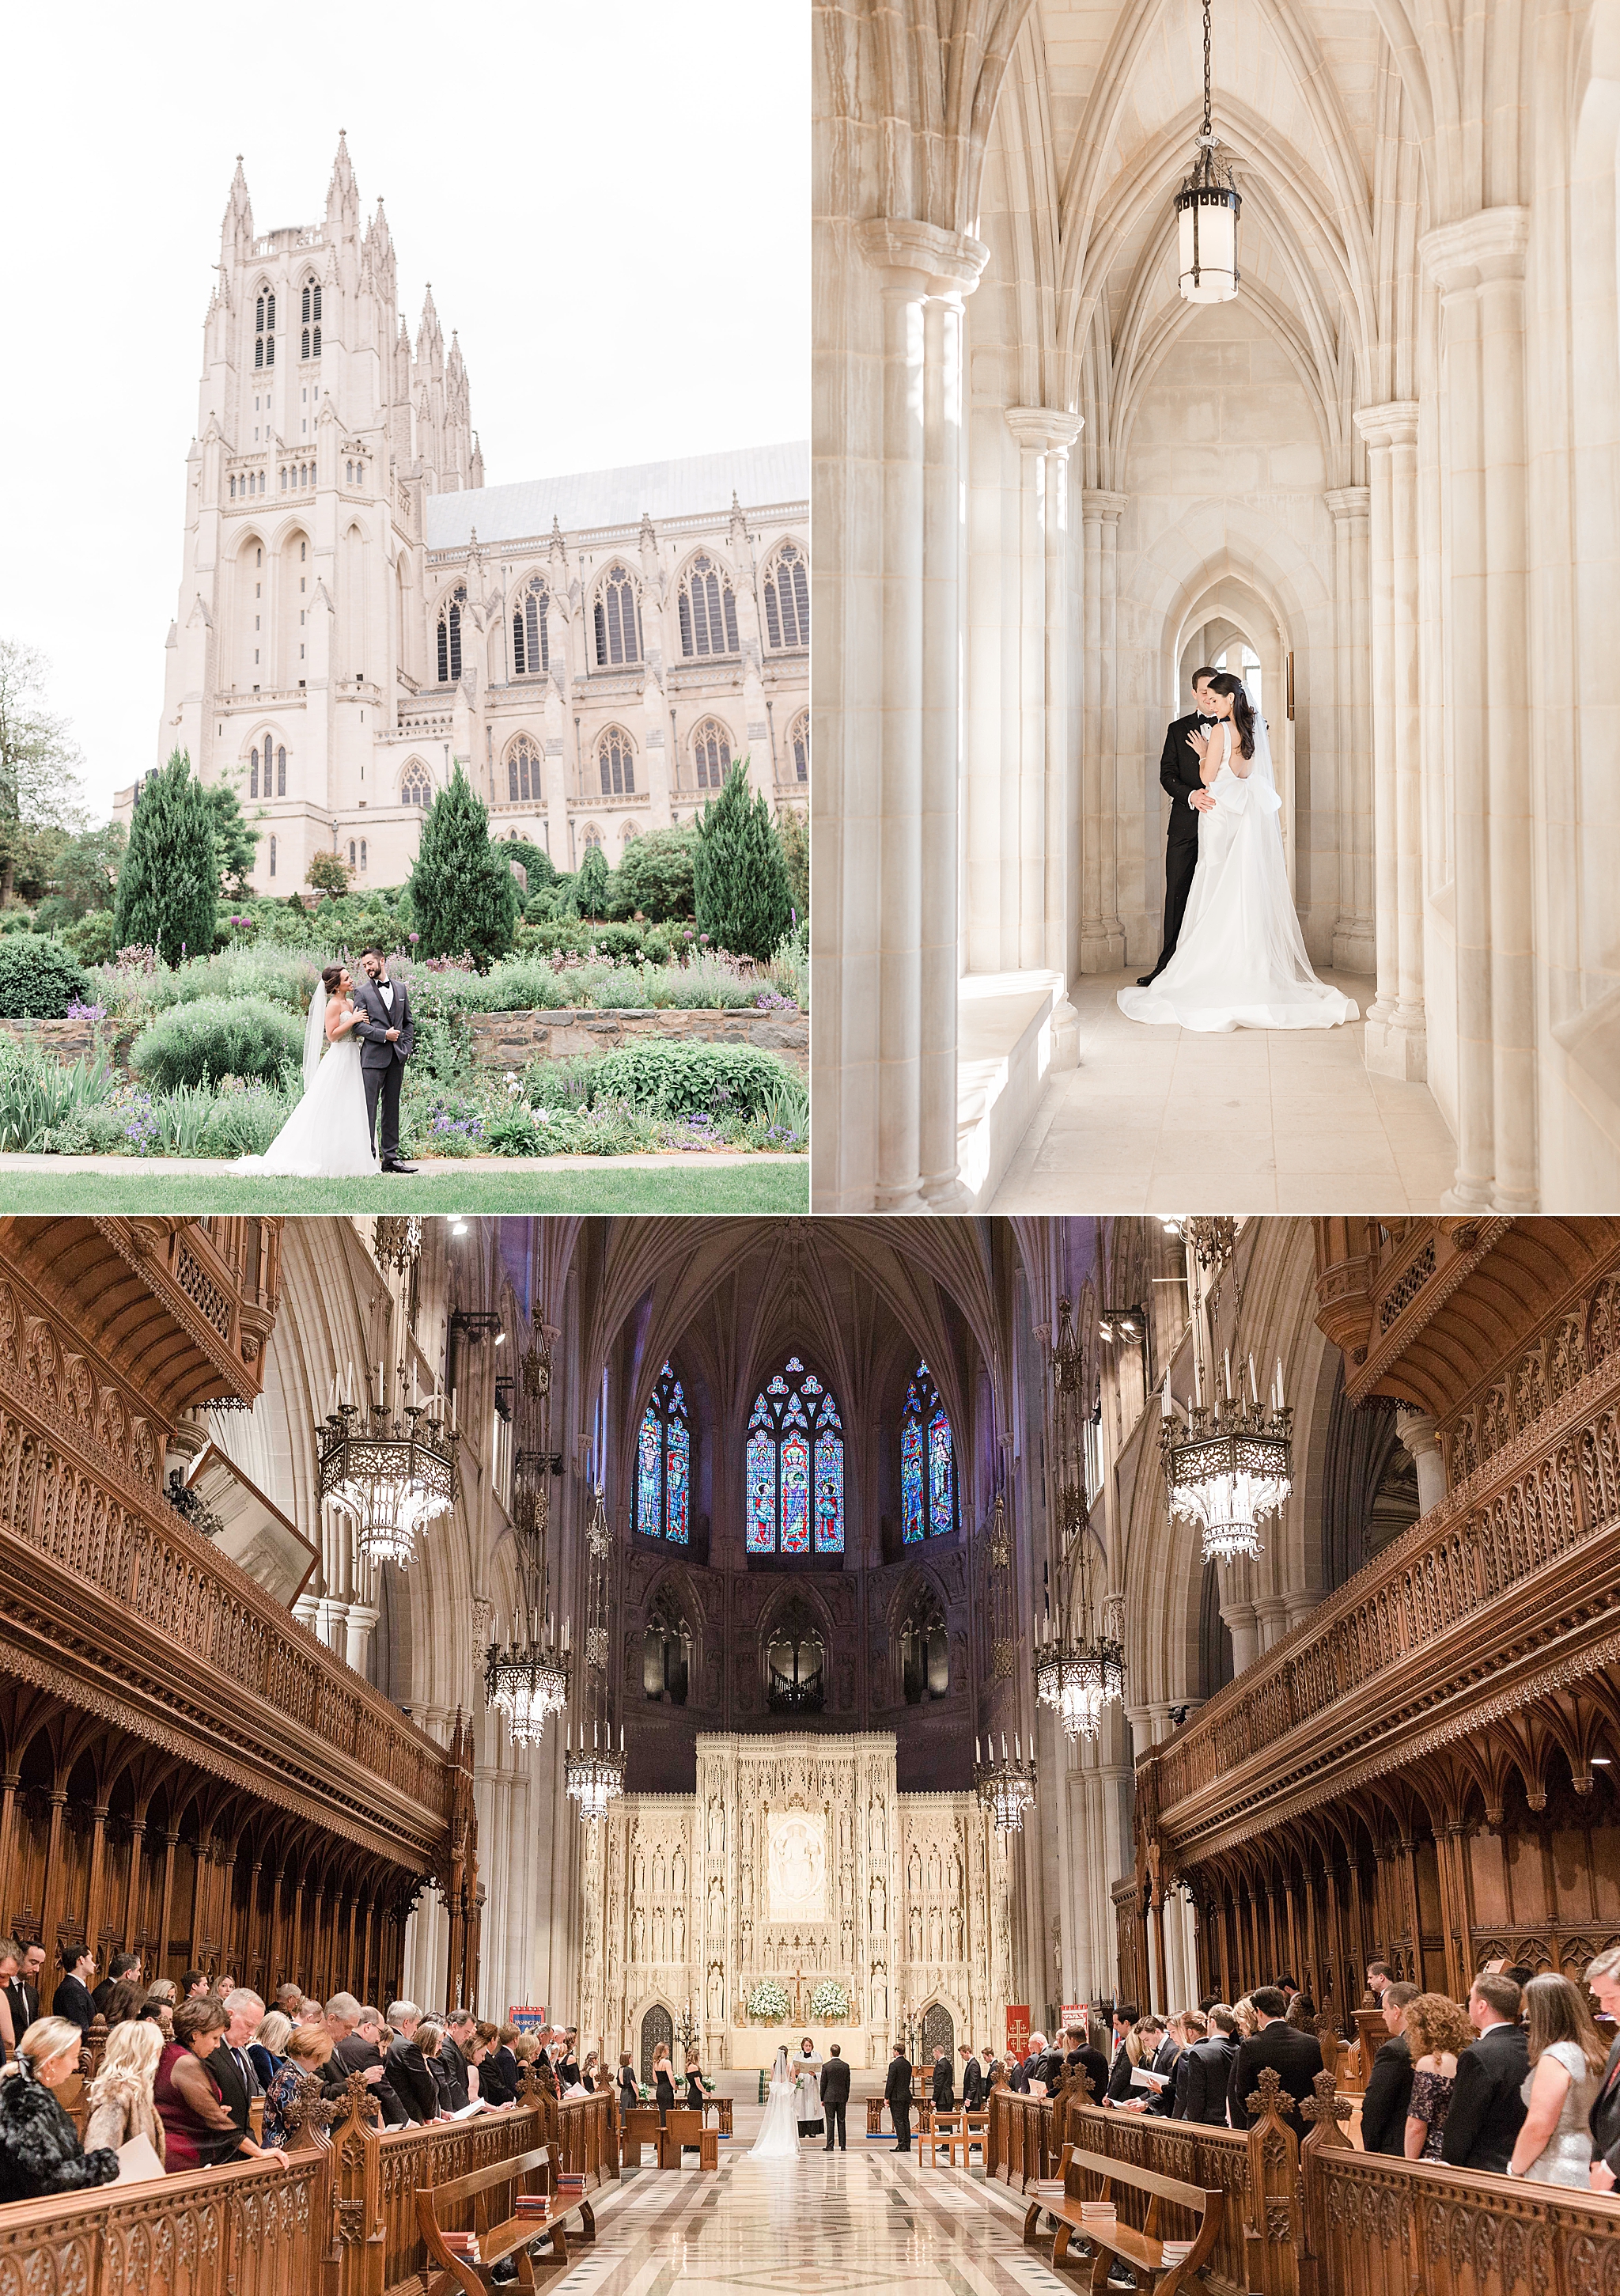 Wedding Photos at the Washington National Cathedral